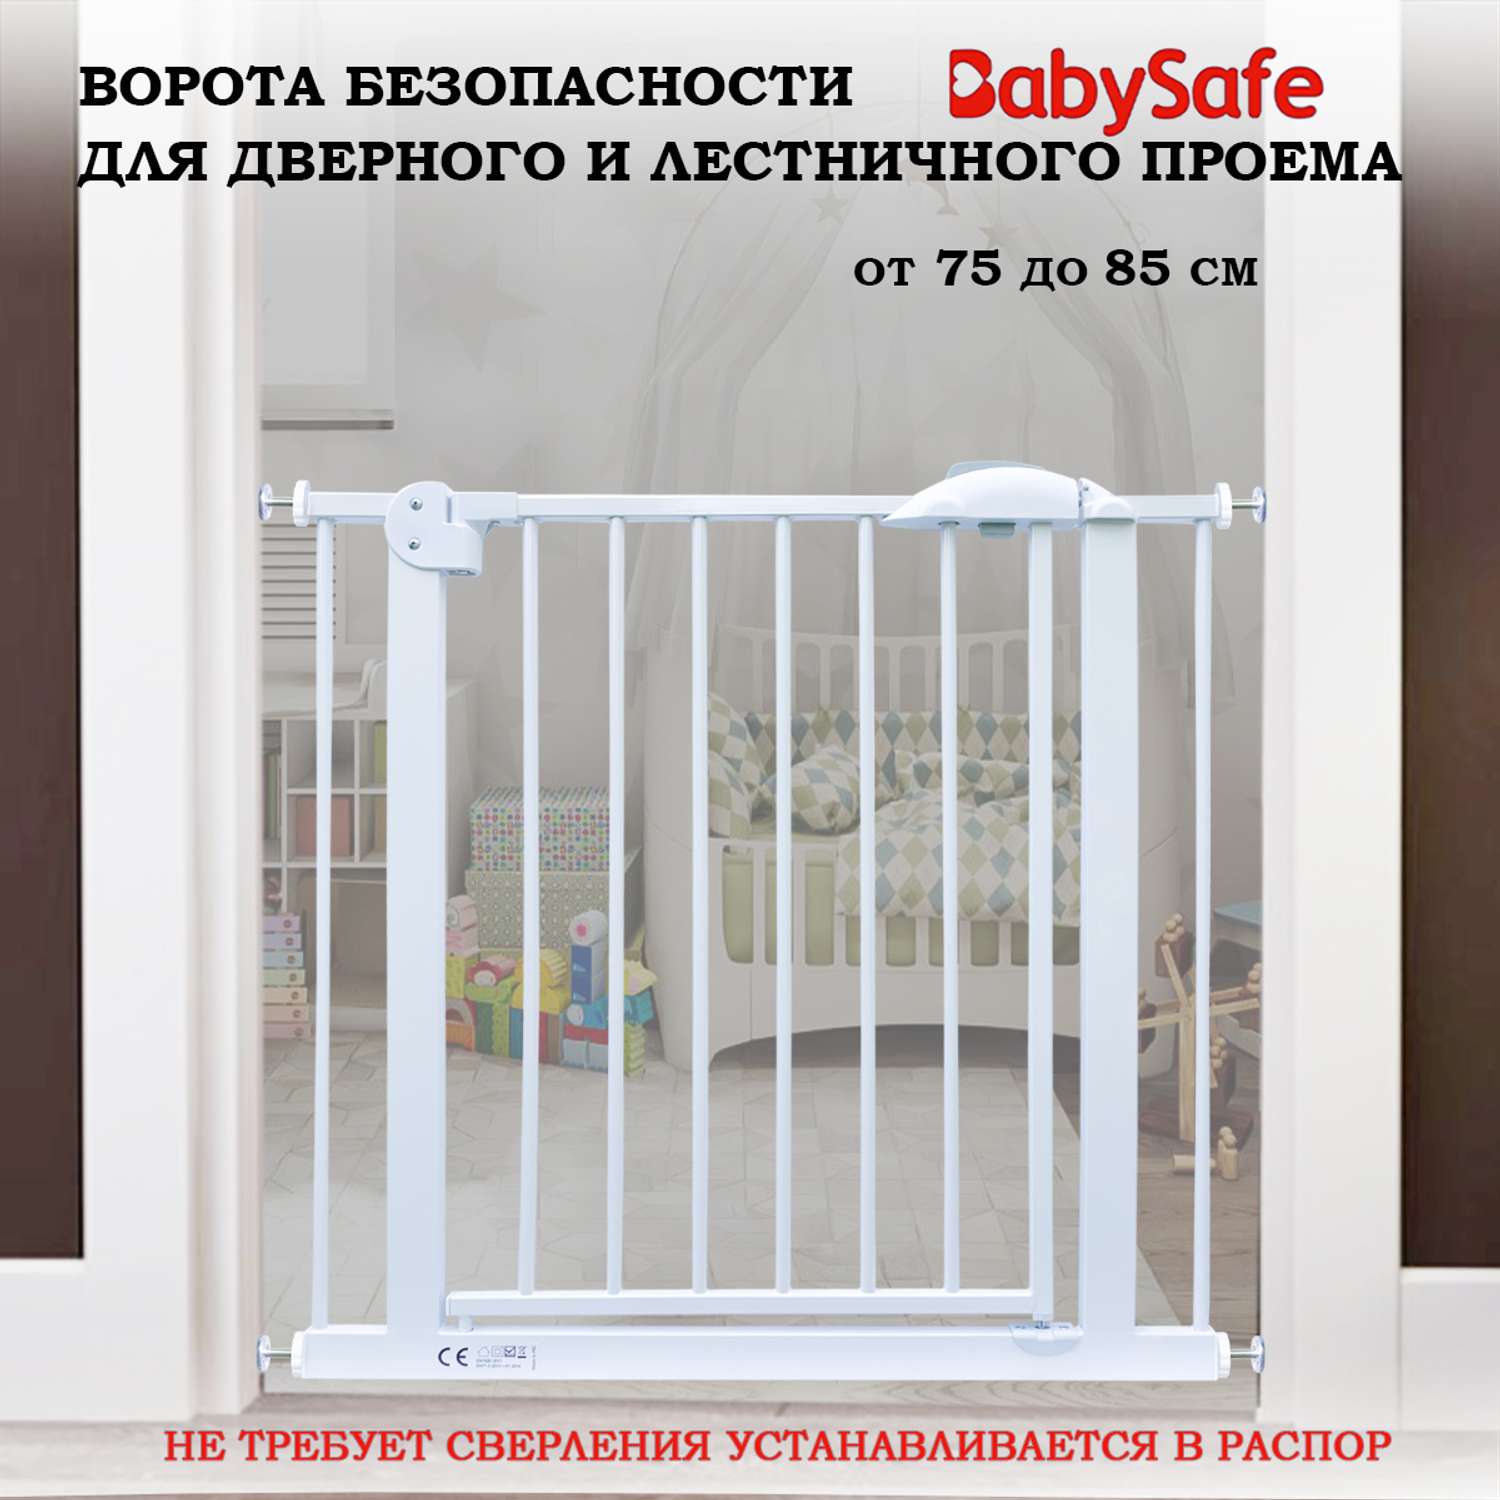 Барьер-калитка в дверной проем Baby Safe 75-85 cm XY-007 - фото 1